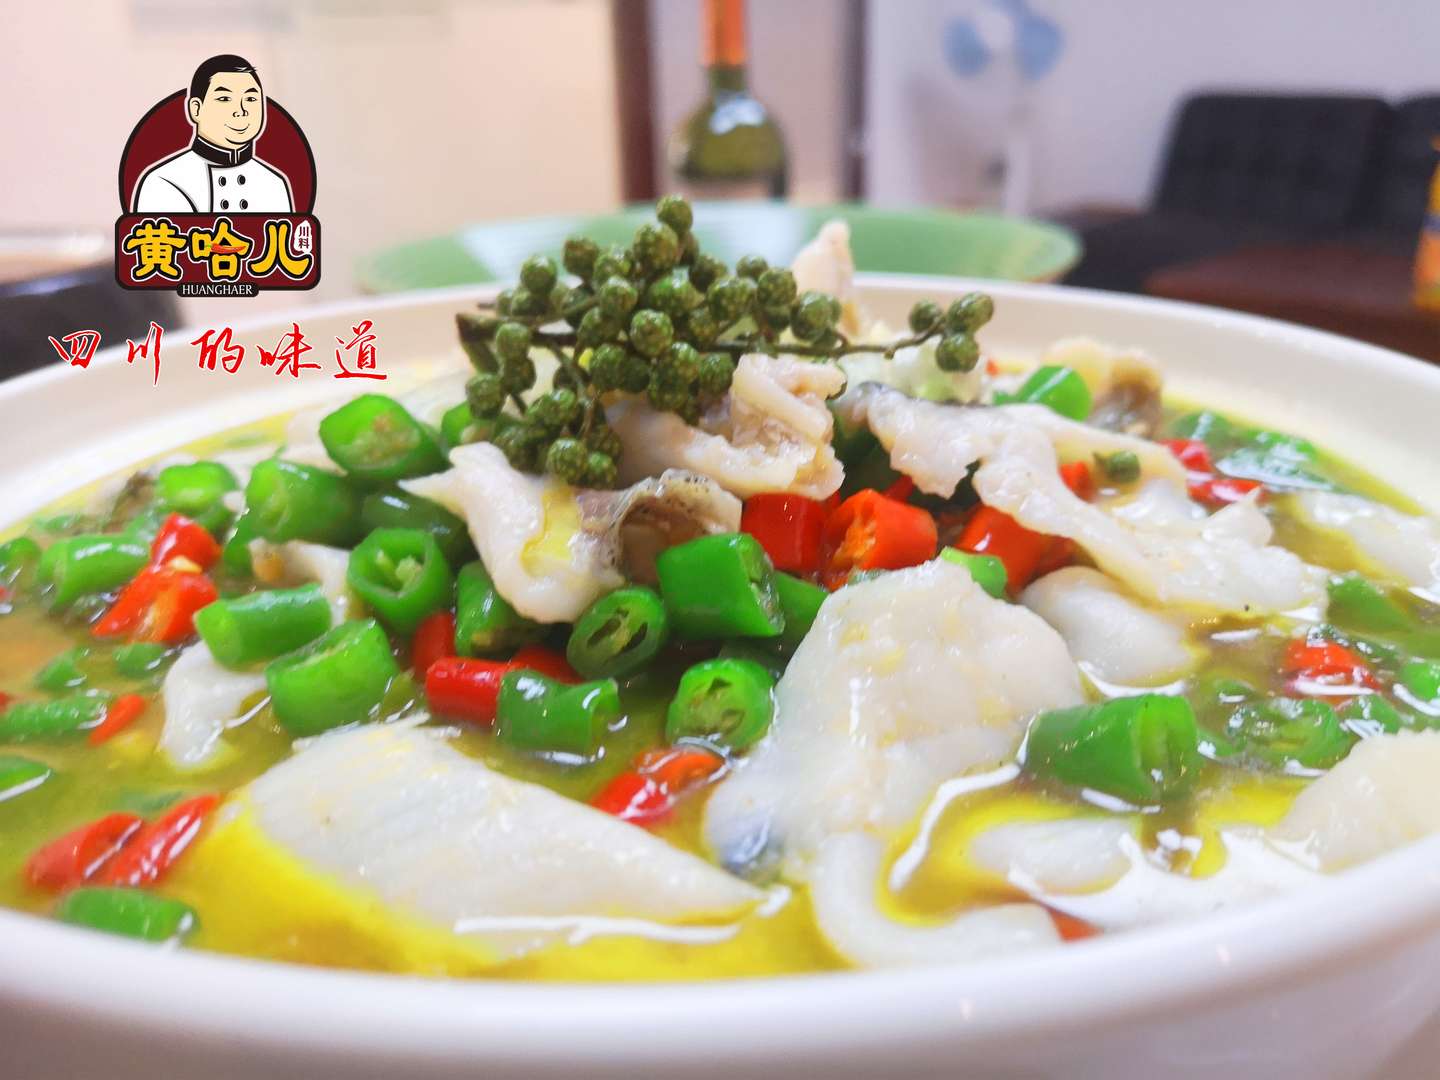 黄哈儿青花椒酱 青花鱼底料 鲜香椒酱 适用于鱼 钵钵鸡等菜品 知乎